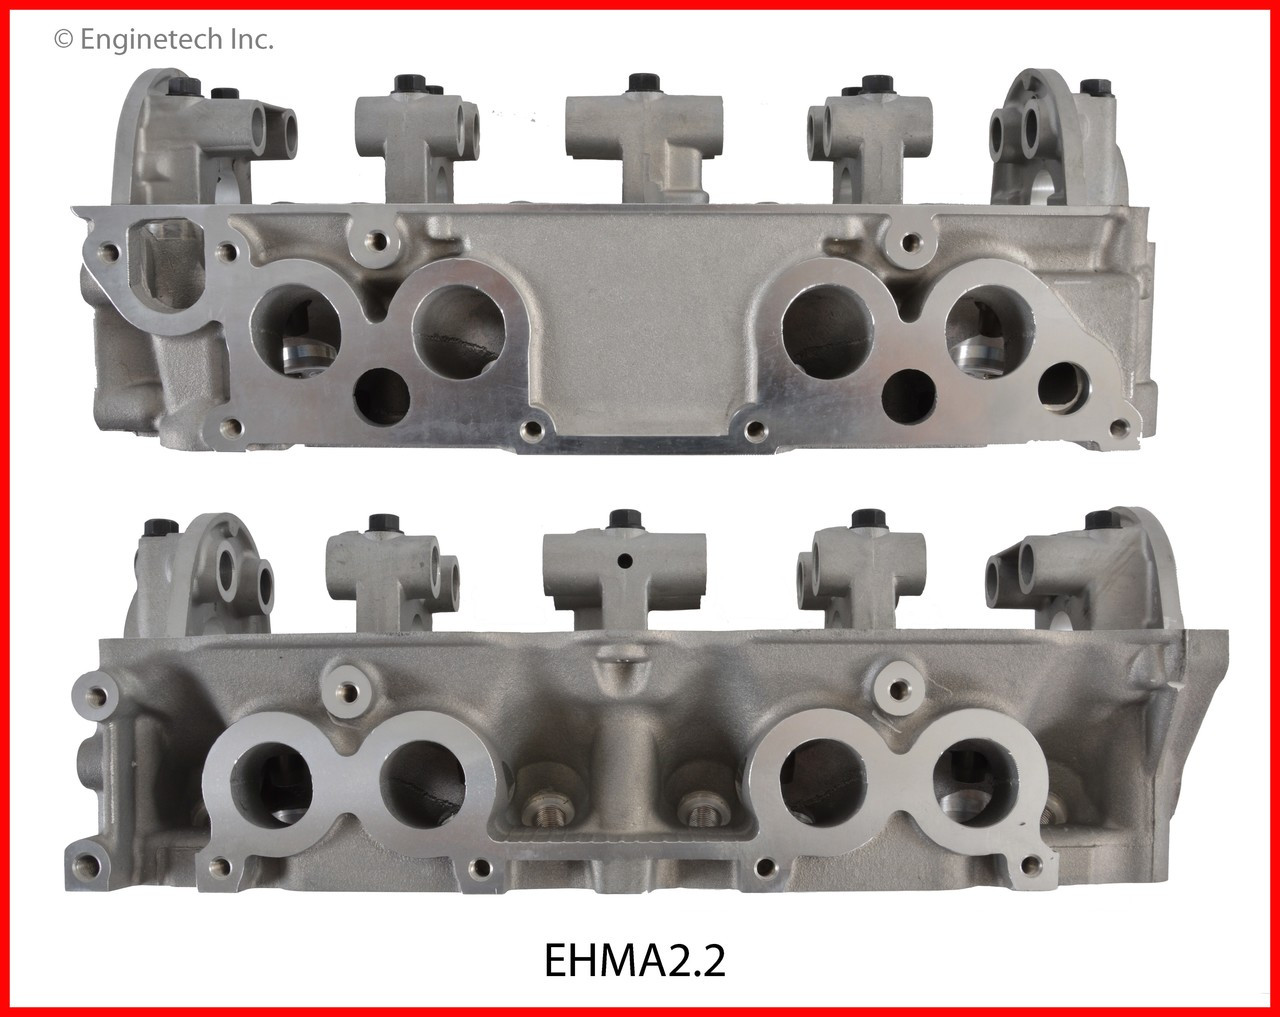 Cylinder Head - 1993 Mazda B2200 2.2L (EHMA2.2.B13)